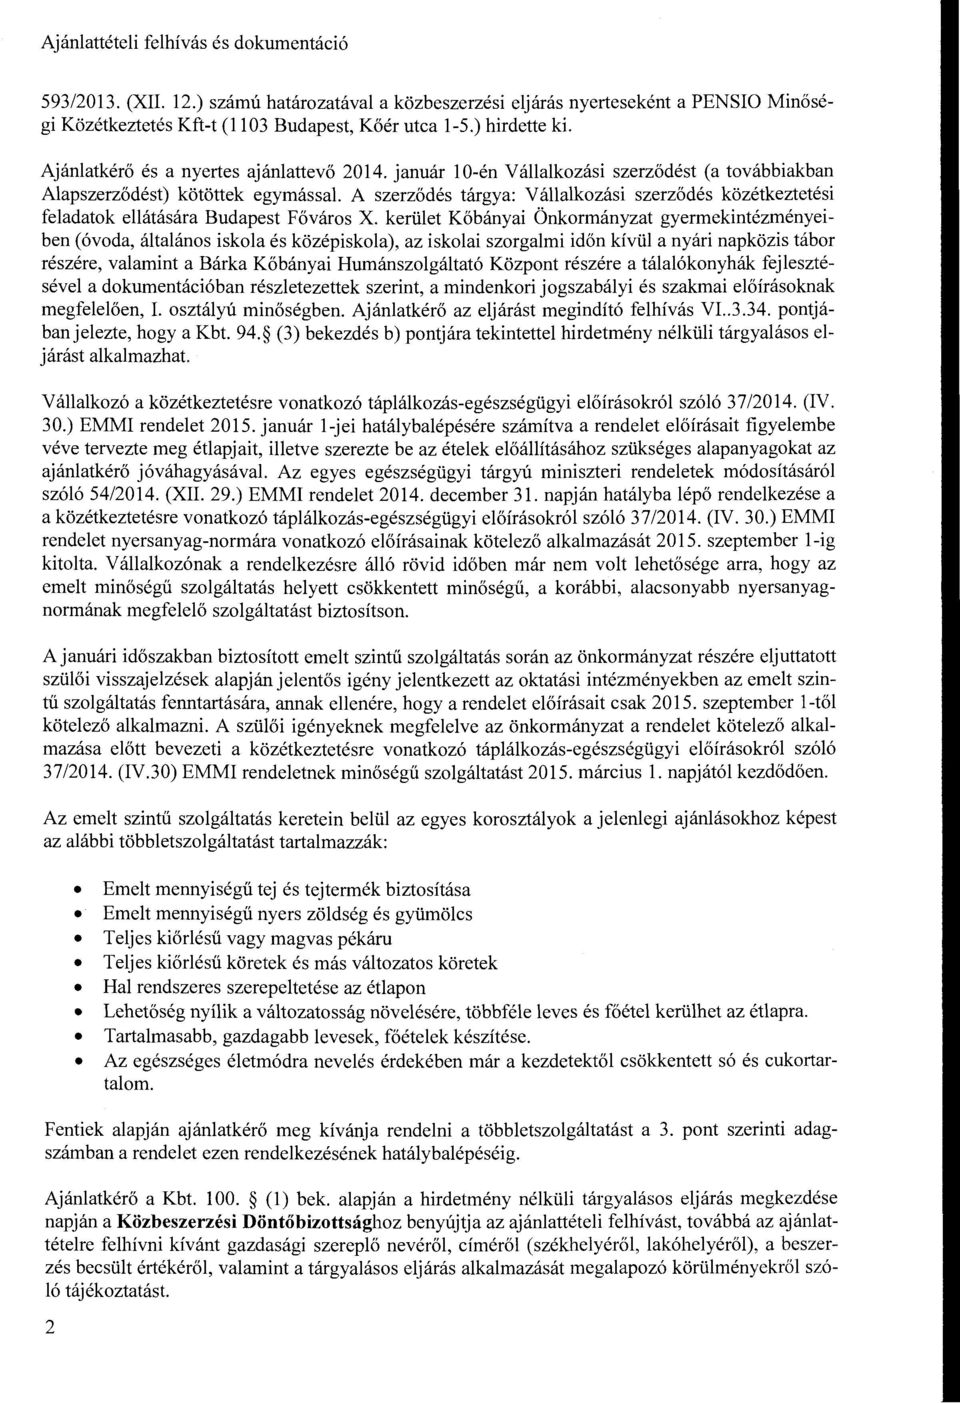 A szerződés tárgya: Vállalkozási szerződés közétkeztetési feladatok ellátására Budapest Főváros X.